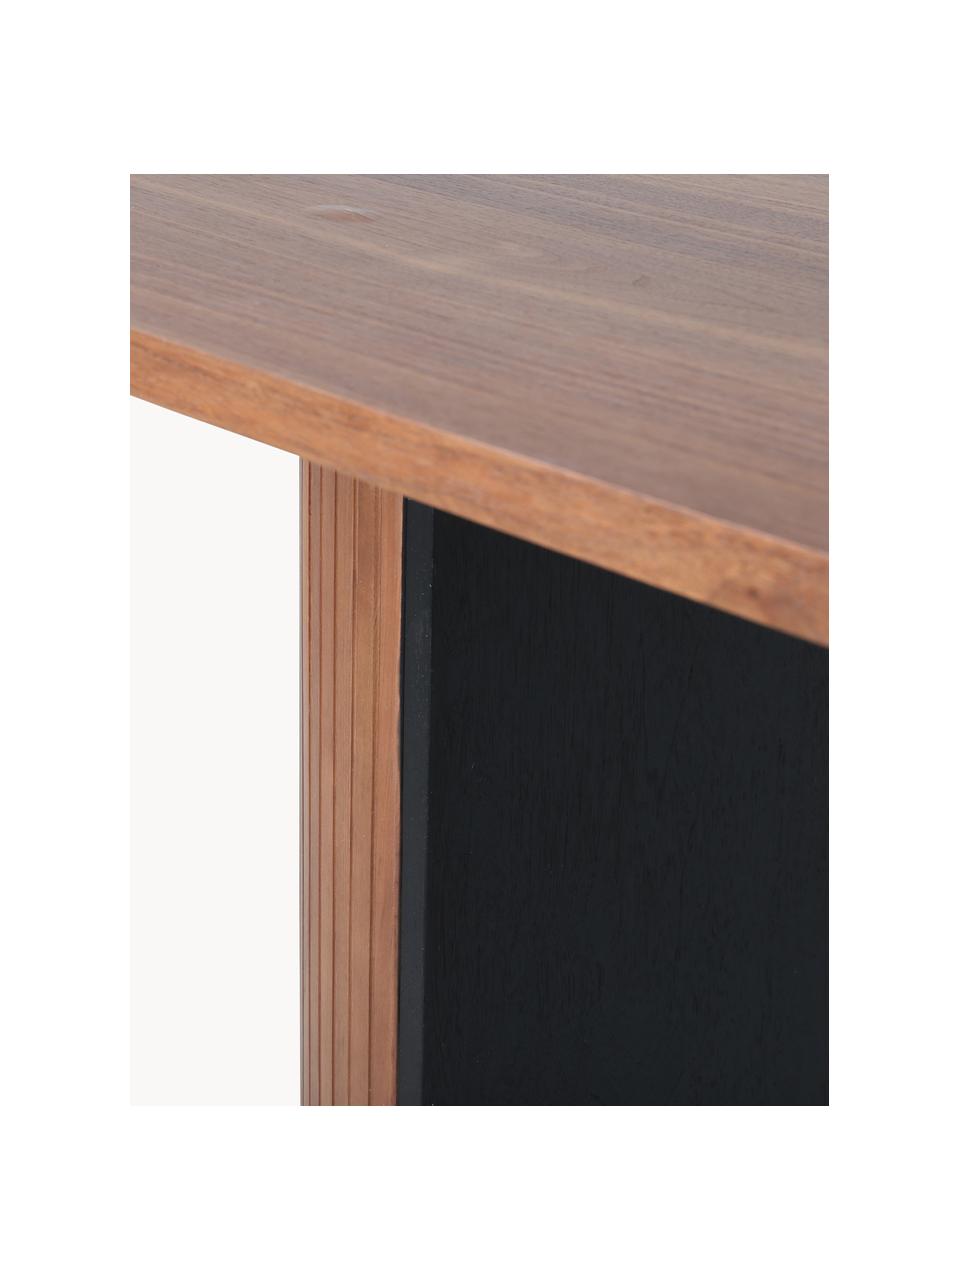 Owalny stół do jadalni z drewna Bianca, 200 x 90 cm, Blat: płyta pilśniowa średniej , Nogi: drewno egzotyczne lakiero, Drewno dębowe lakierowane na ciemno, S 200 x G 90 cm